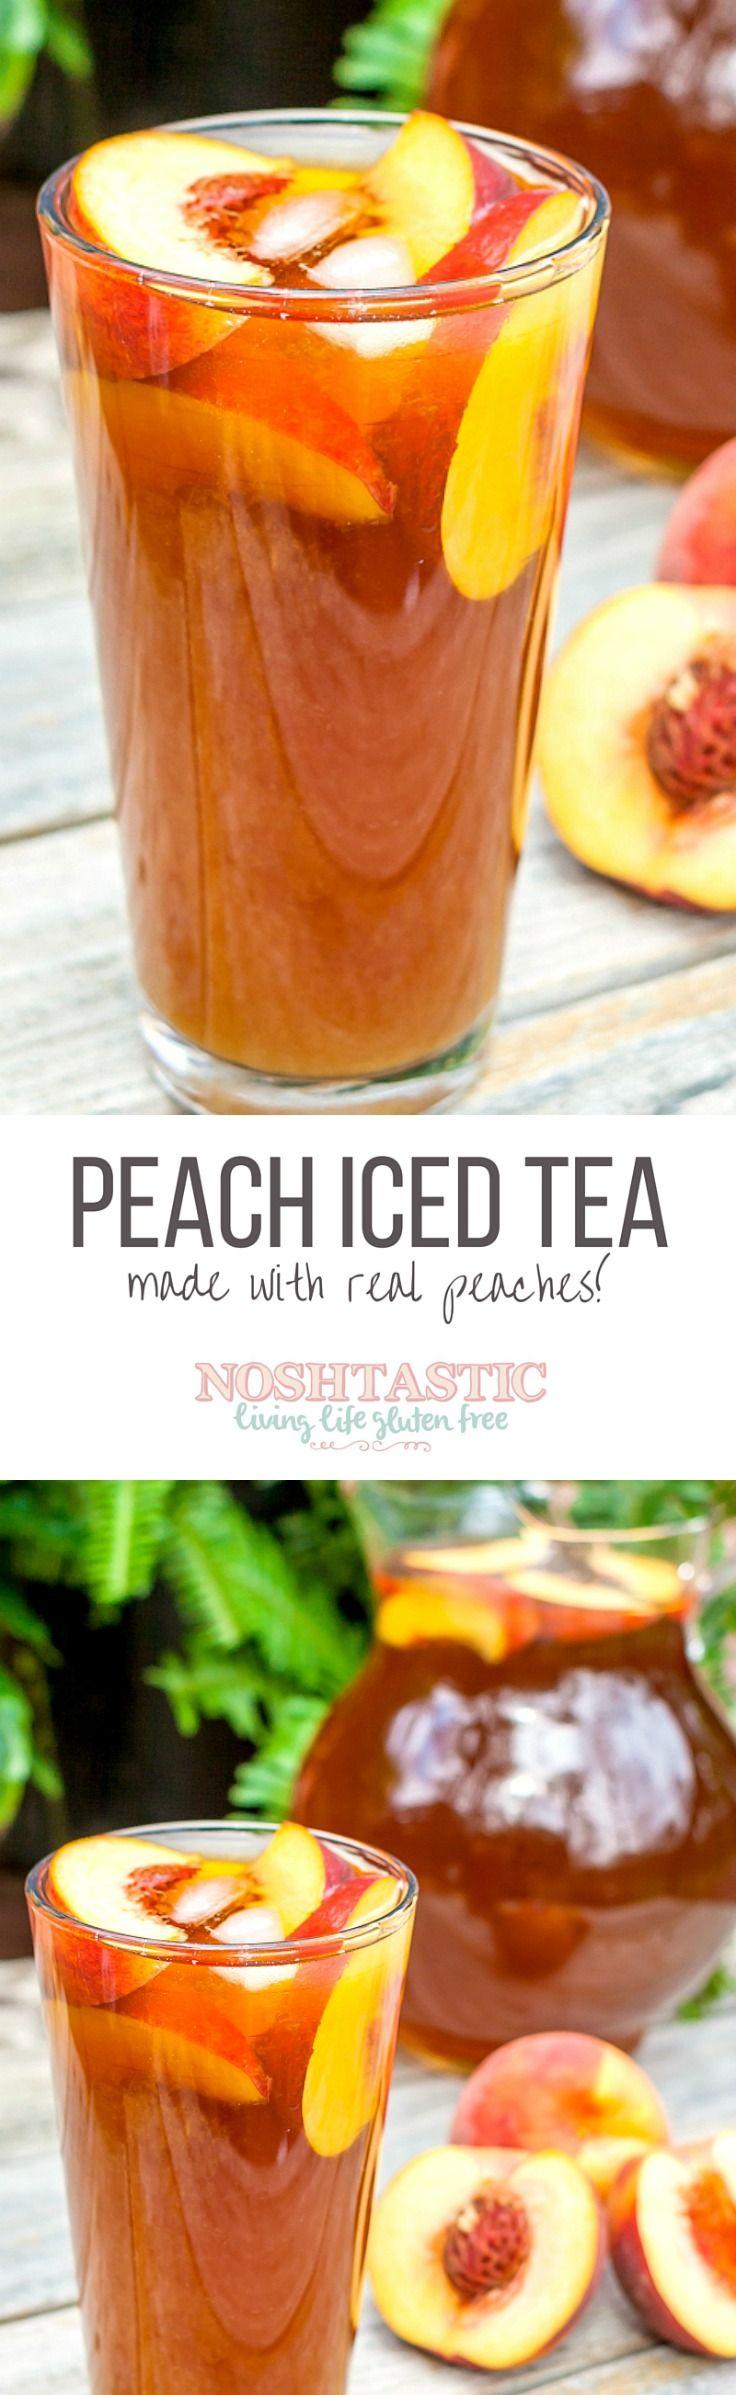 Wedding - Delicious Peach Iced Tea